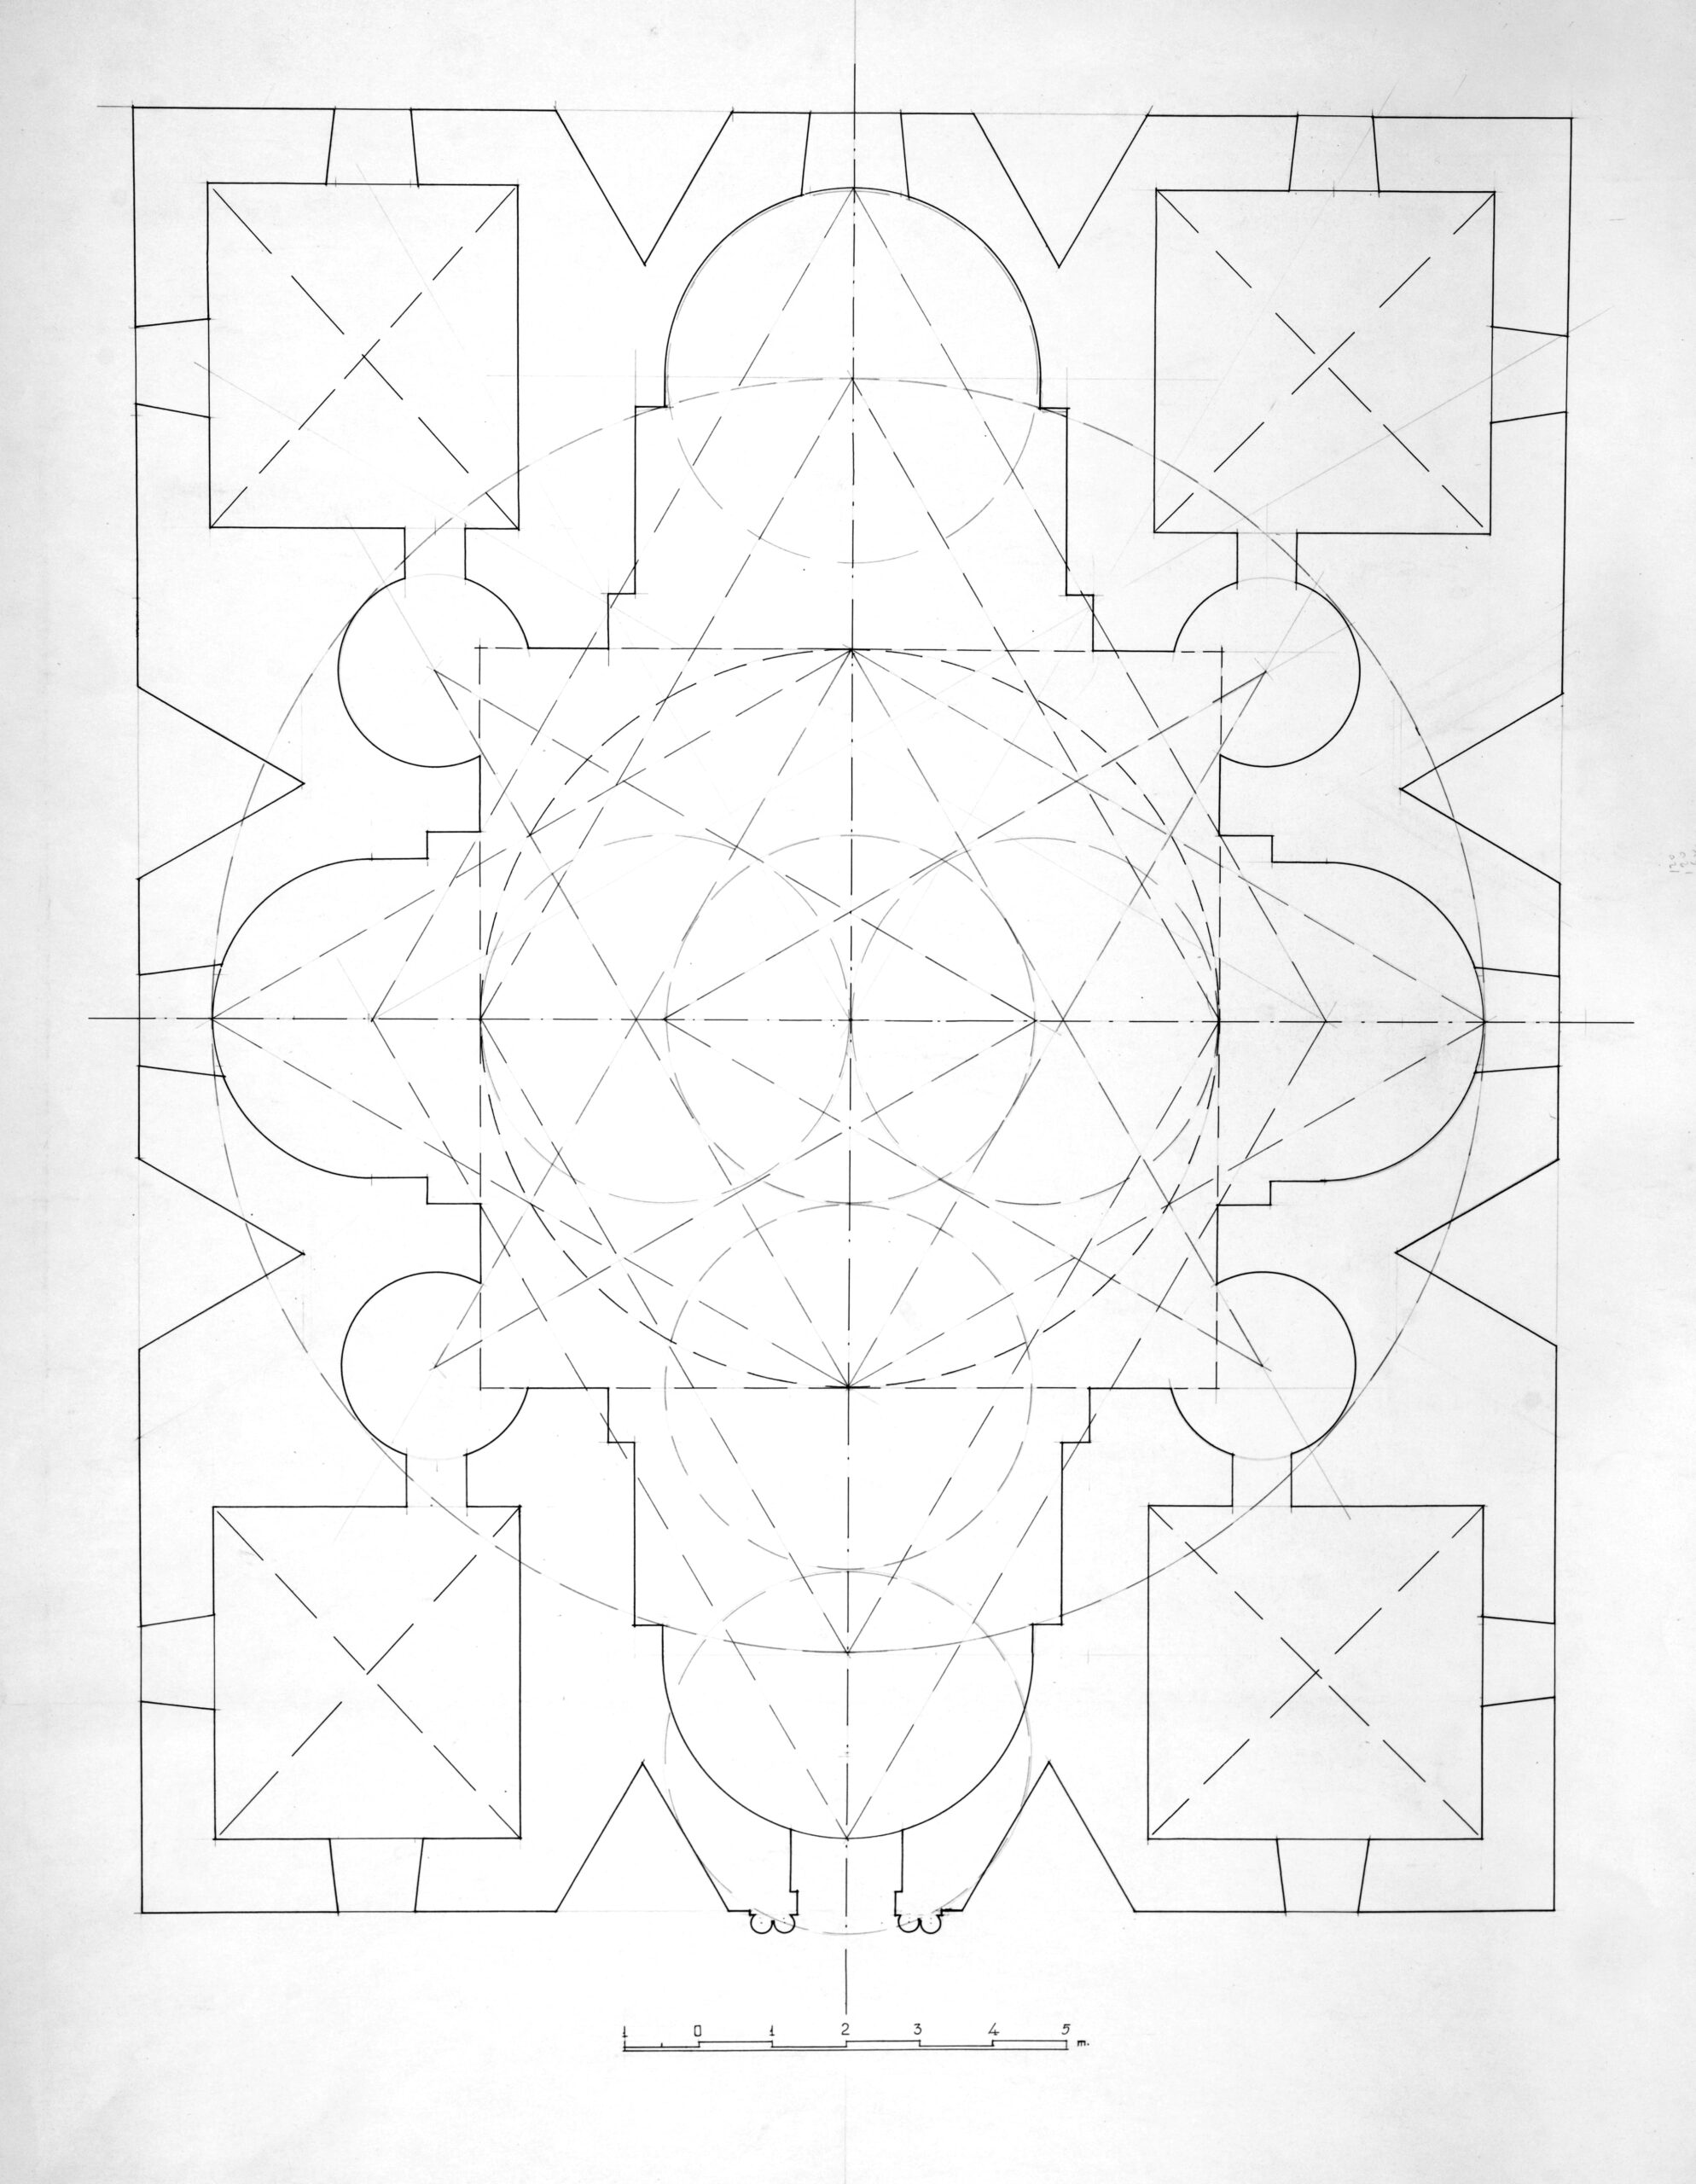 Ավանատիպ տաճարի տիպական հատակագծի ստեղծման կանոնական համակարգը (տարբերակ)